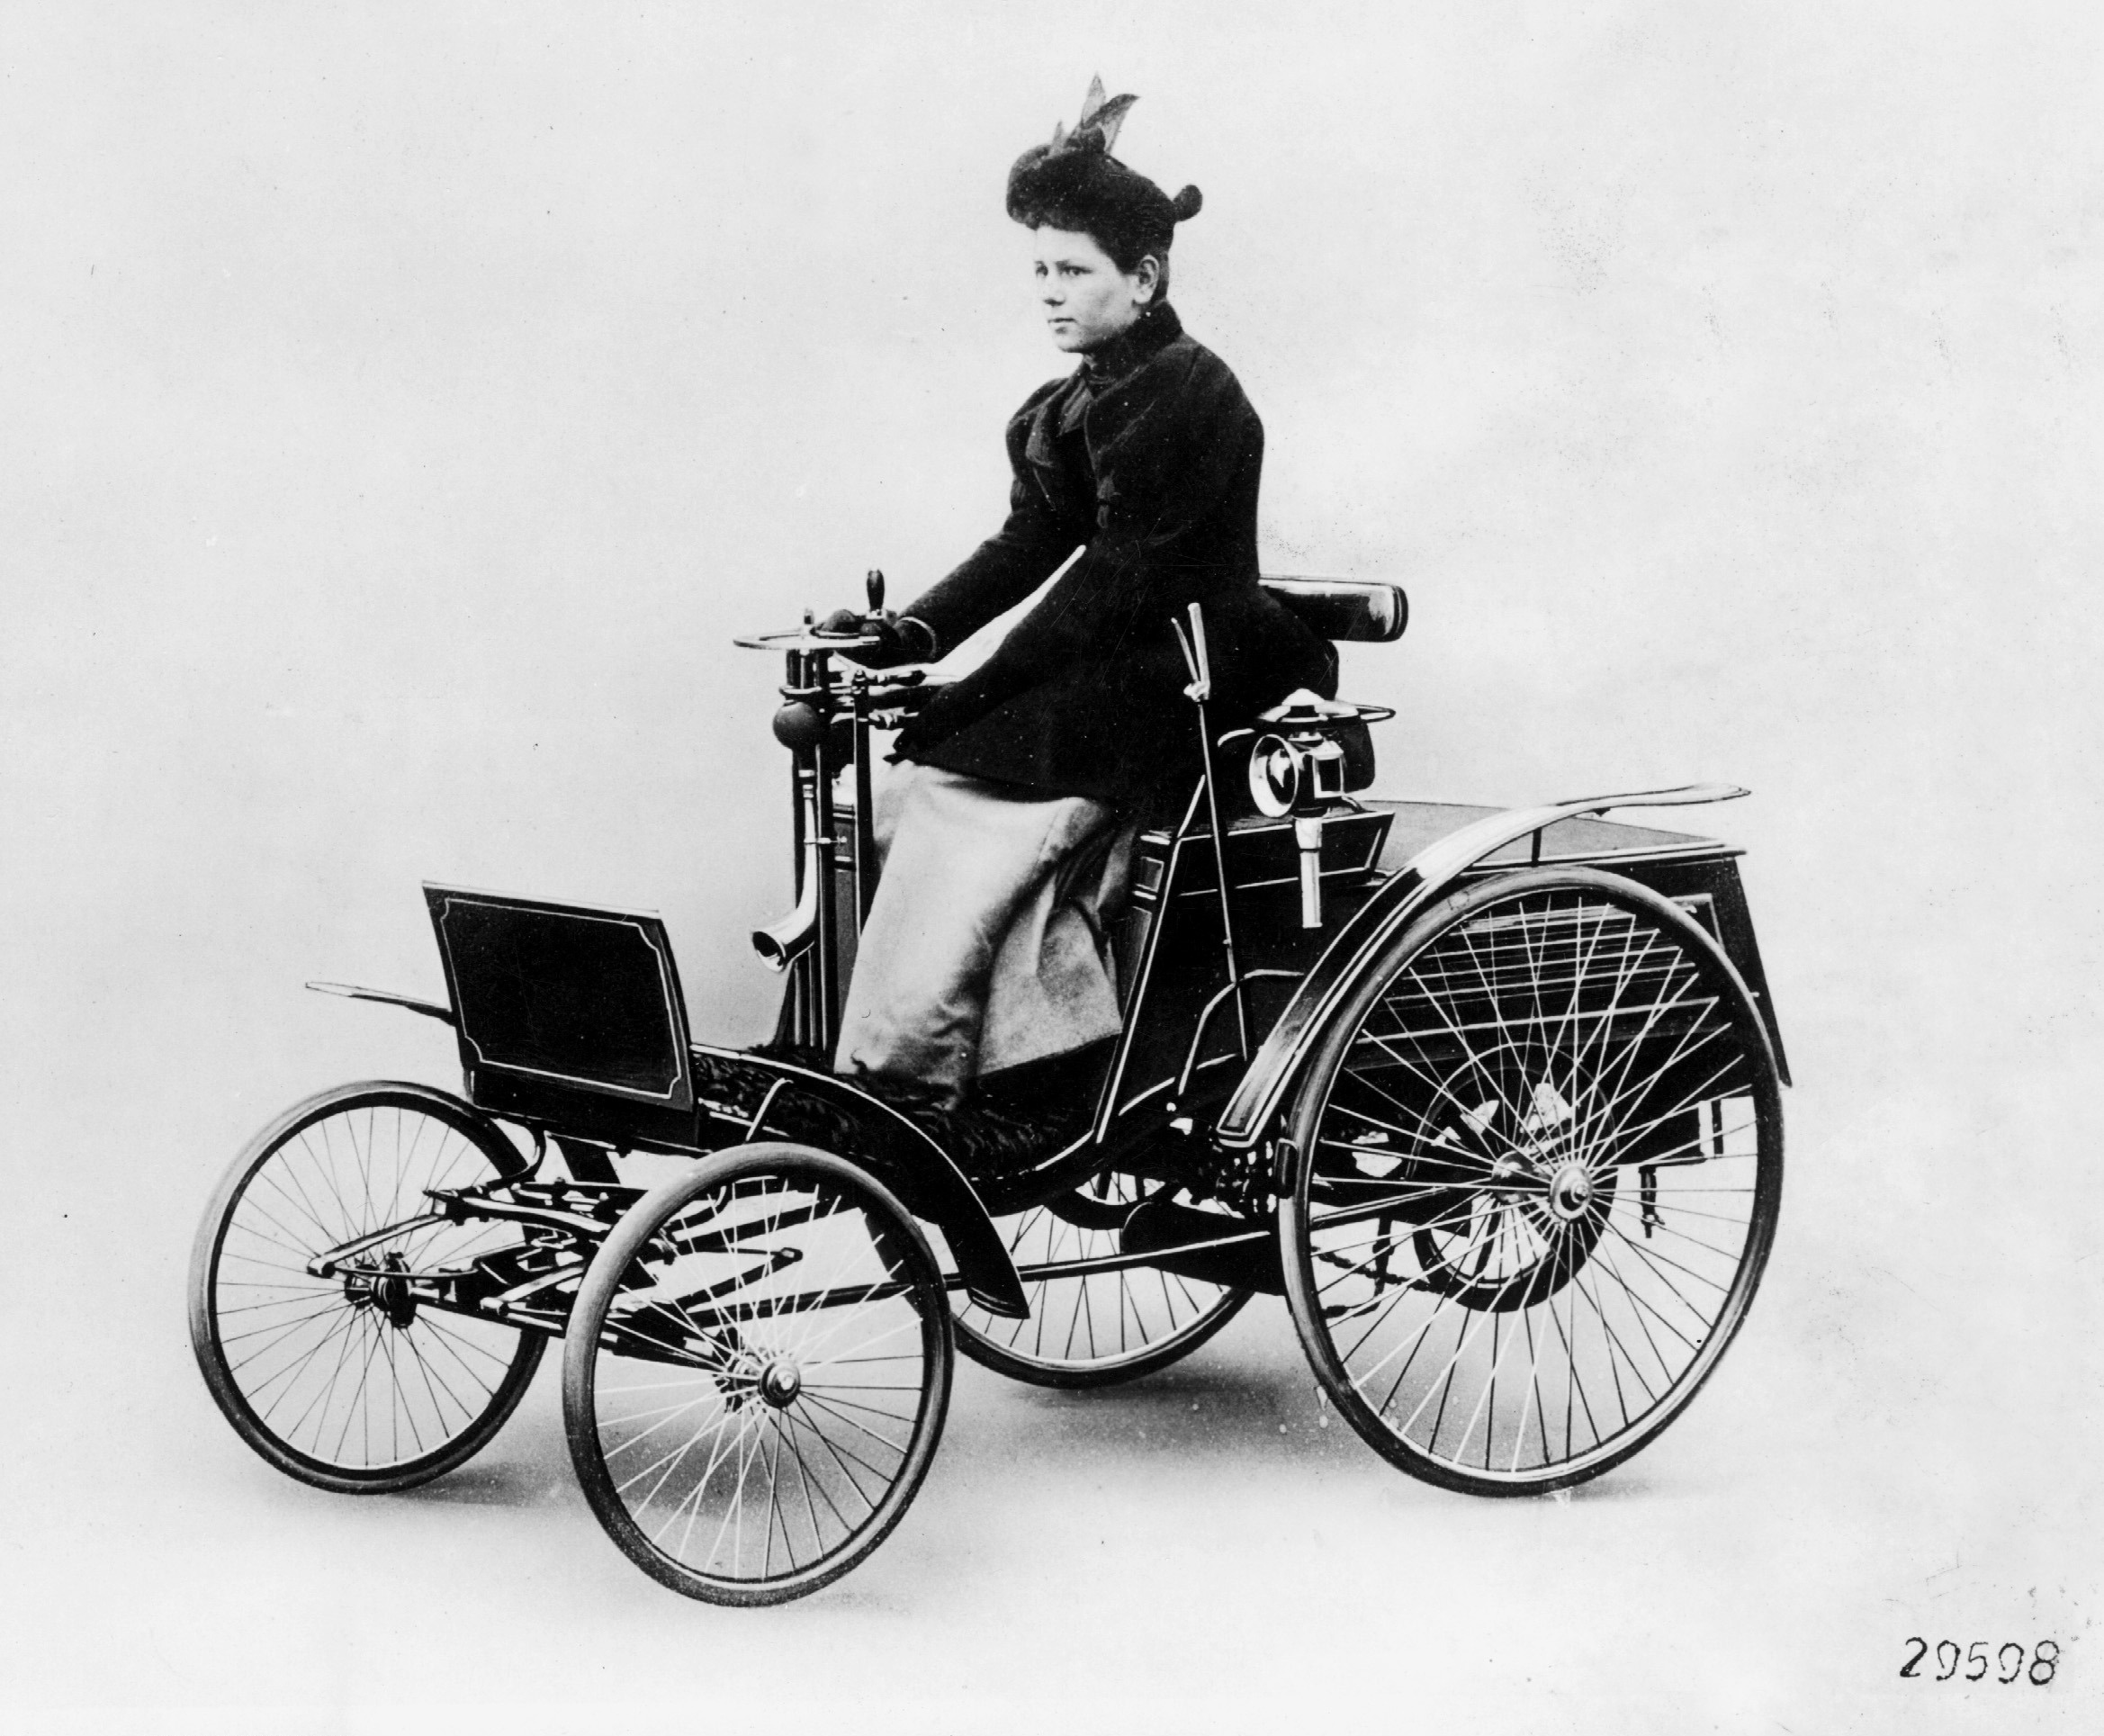 Уже в 1894 году Бенц начал выпуск автомобиля Velo. Он был оснащен одноцилиндровым двигателем объемом 1045 кубических сантиметров и мощностью полторы лошадиные силы. Через два года мощность удалось увеличить до 2,75 лошадиной силы, а к 1903 году число "лошадок" увеличилось до трех. Первые экземпляры имели двухступенчатую коробку передач, а с 1896 года выпускались модели с трехступенчатой трансмиссией и возможностью заднего хода. В общей сложности компания Бенца выпустила 1200 экземпляров Velo 